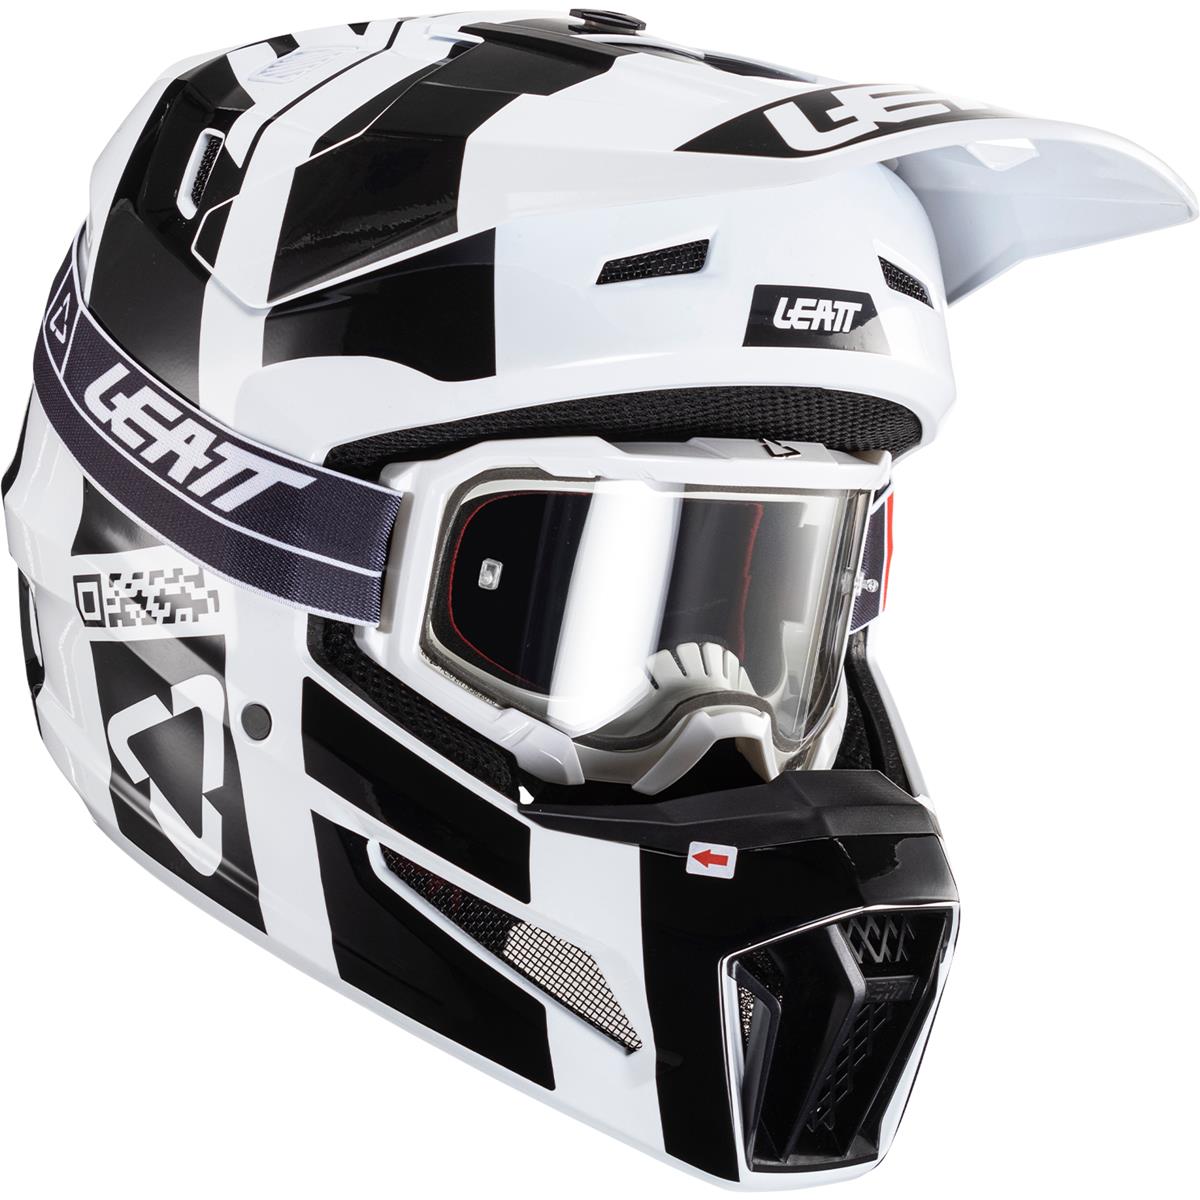 Leatt Motocross-Helm-Kit mit Brille Moto 3.5 V24 Schwarz/Weiß